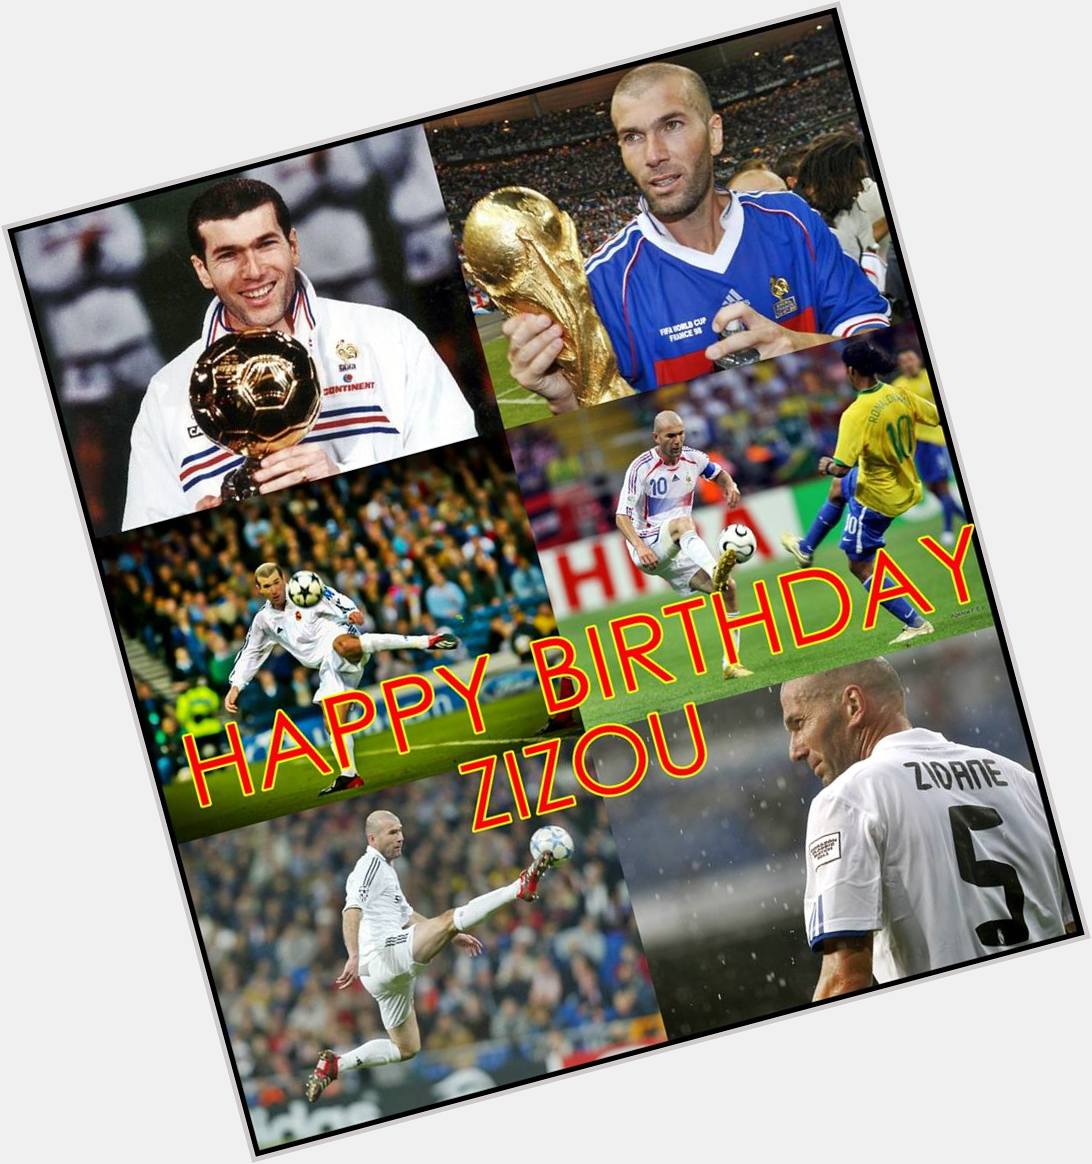 Happy Birthday, Zinedine Zidane!
Alles gute zum Geburtstag, Zizou! 